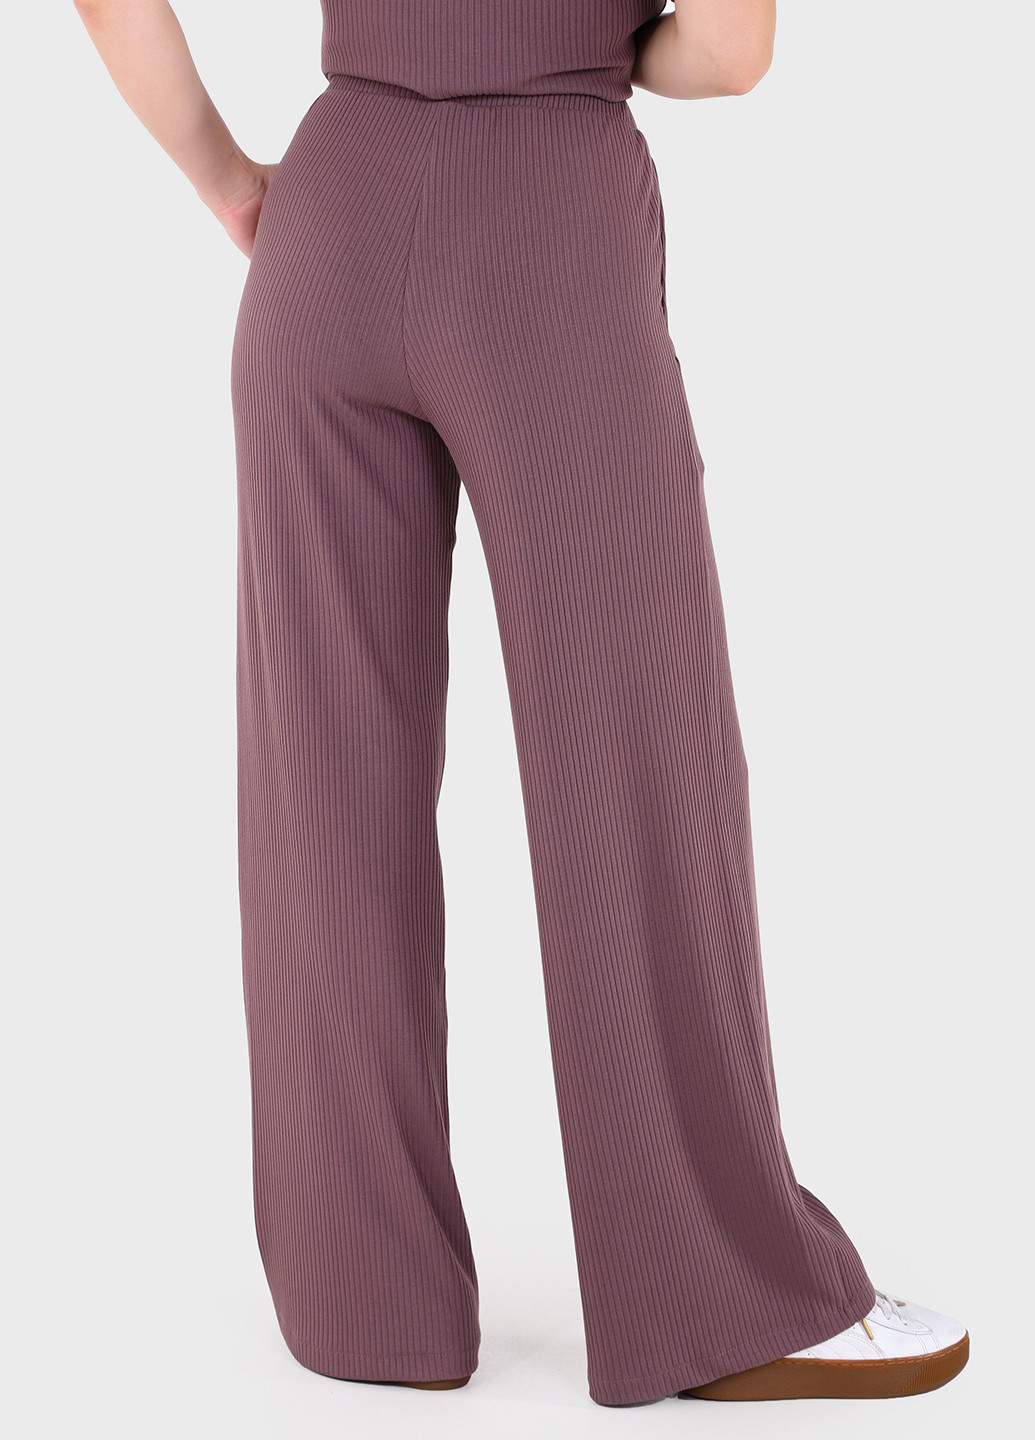 Жіночі штани кльош в рубчик фіолетового кольору Амаранті 600000070 Merlini амаранти (257533392)